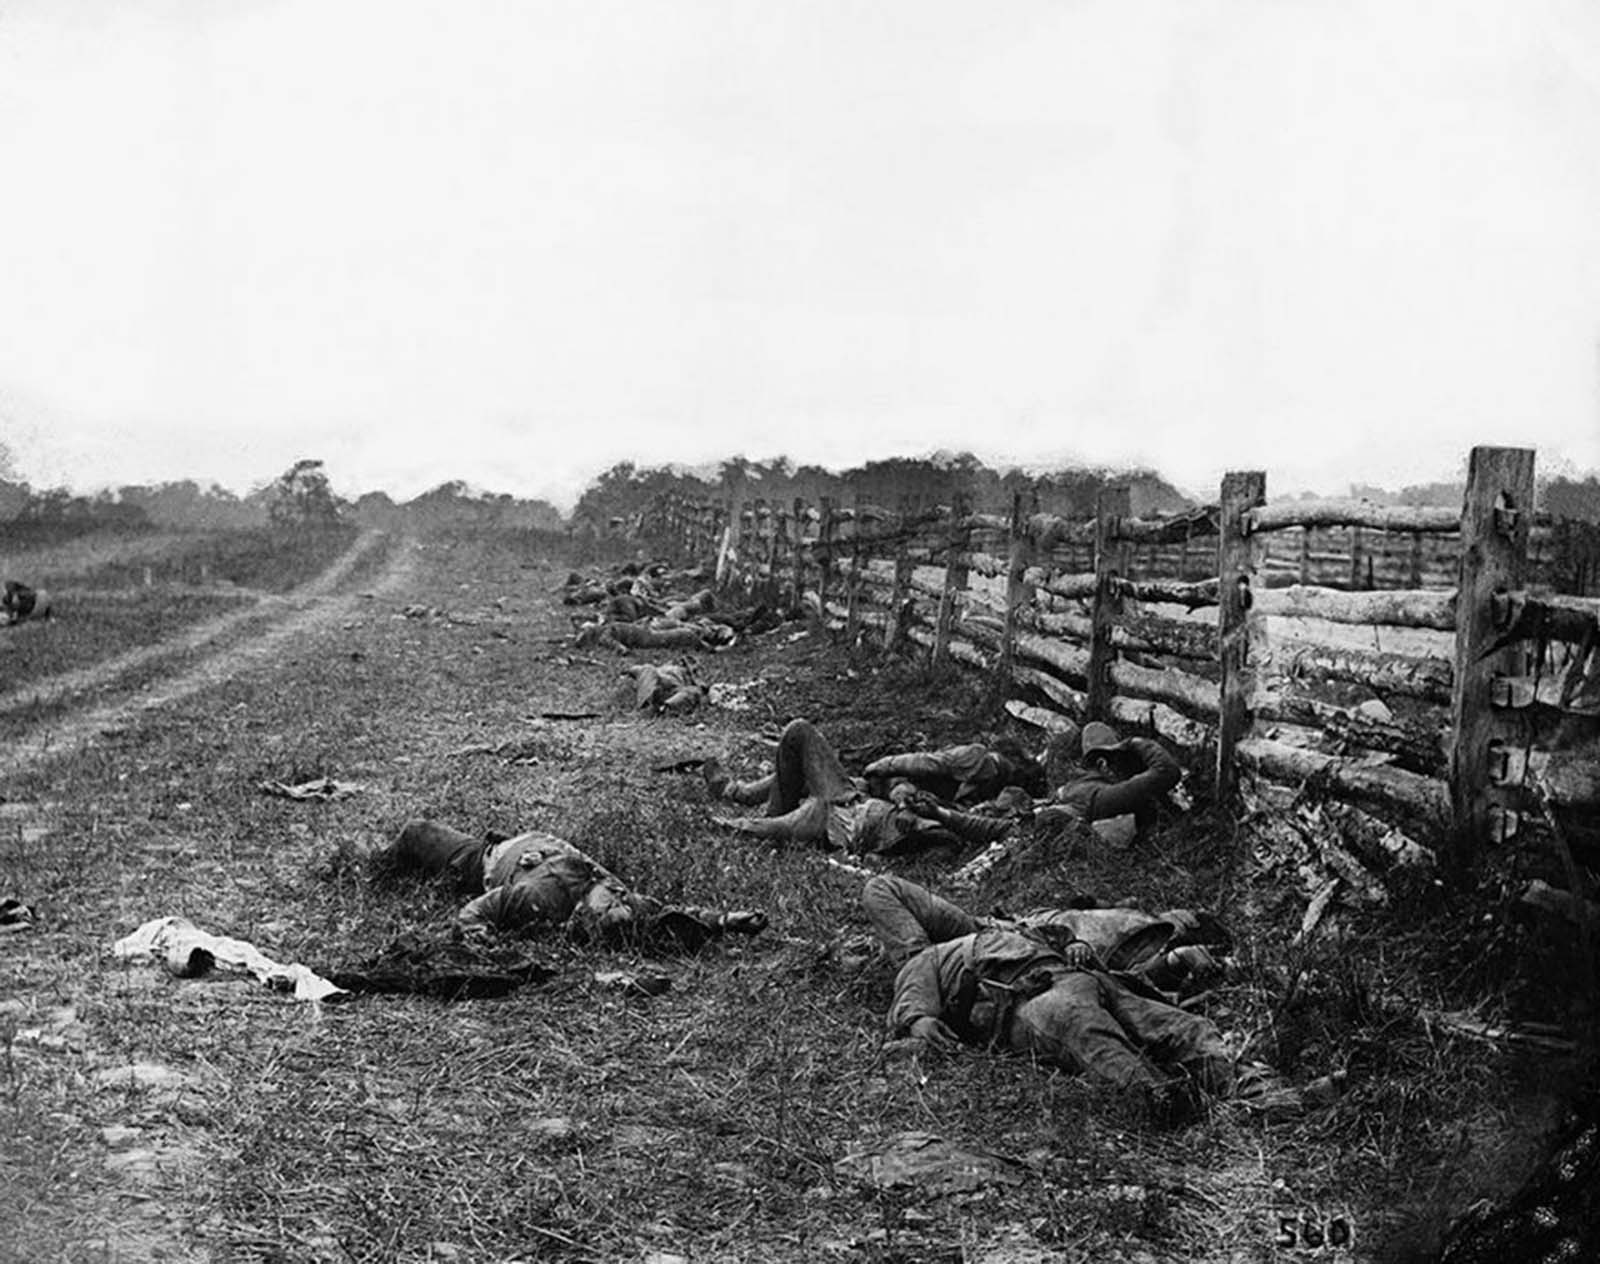 The Dead of Antietam, 1862